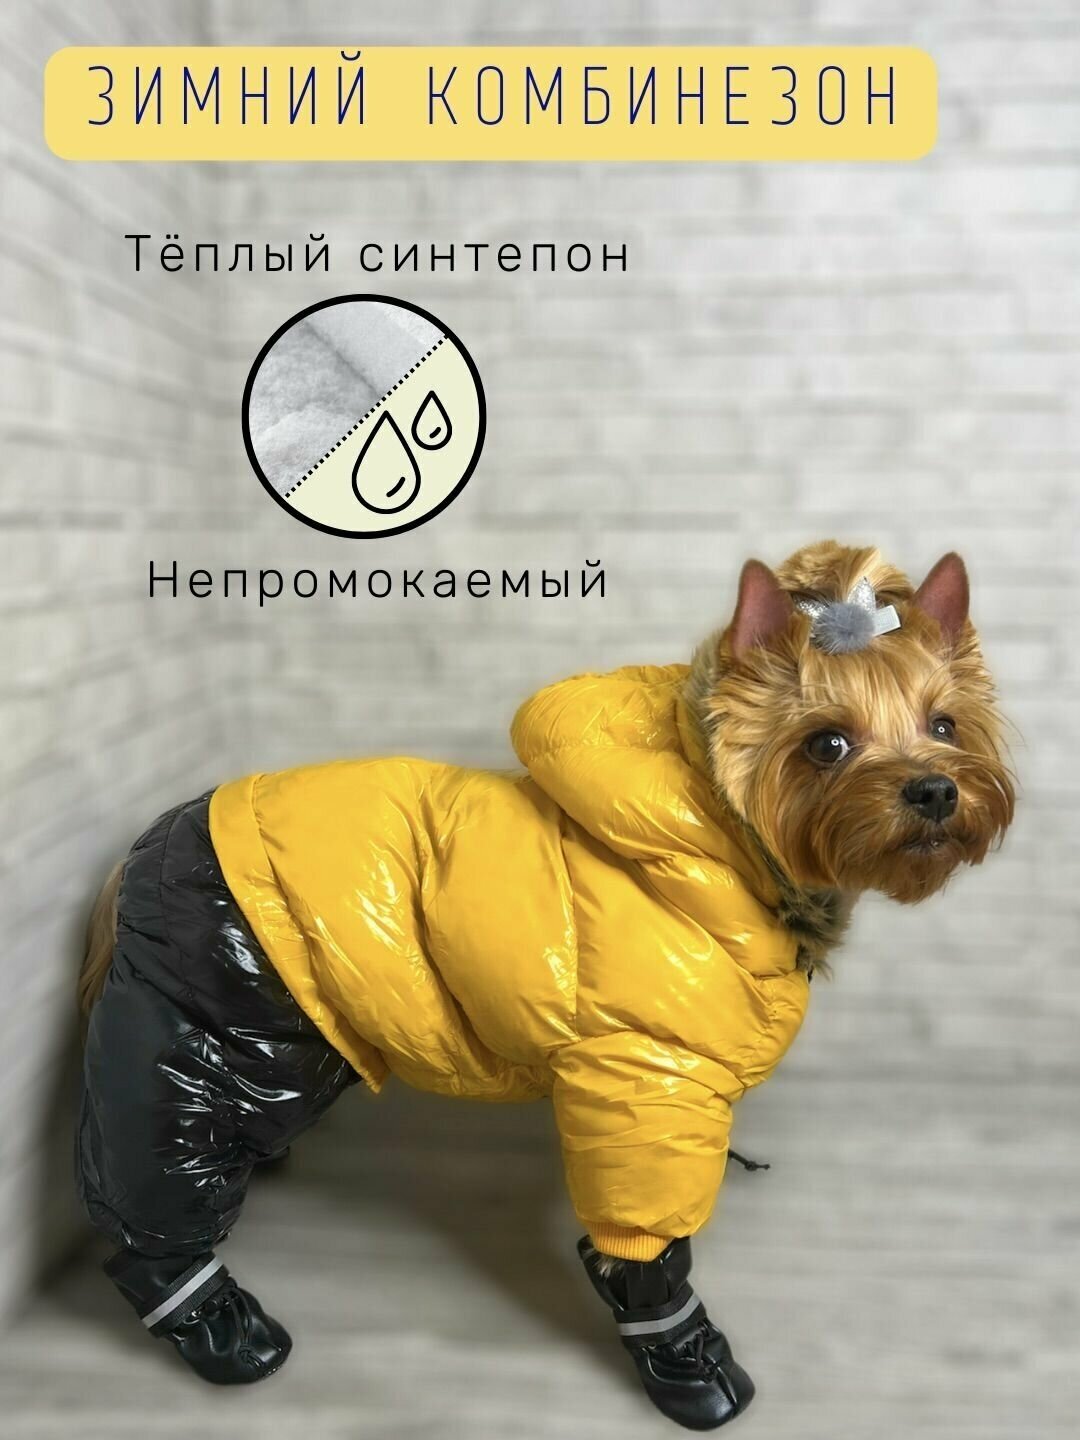 Зимний комбинезон для собак всех пород / Непромокаемый / Плотный синтепон / Размер 12 / Жёлтый